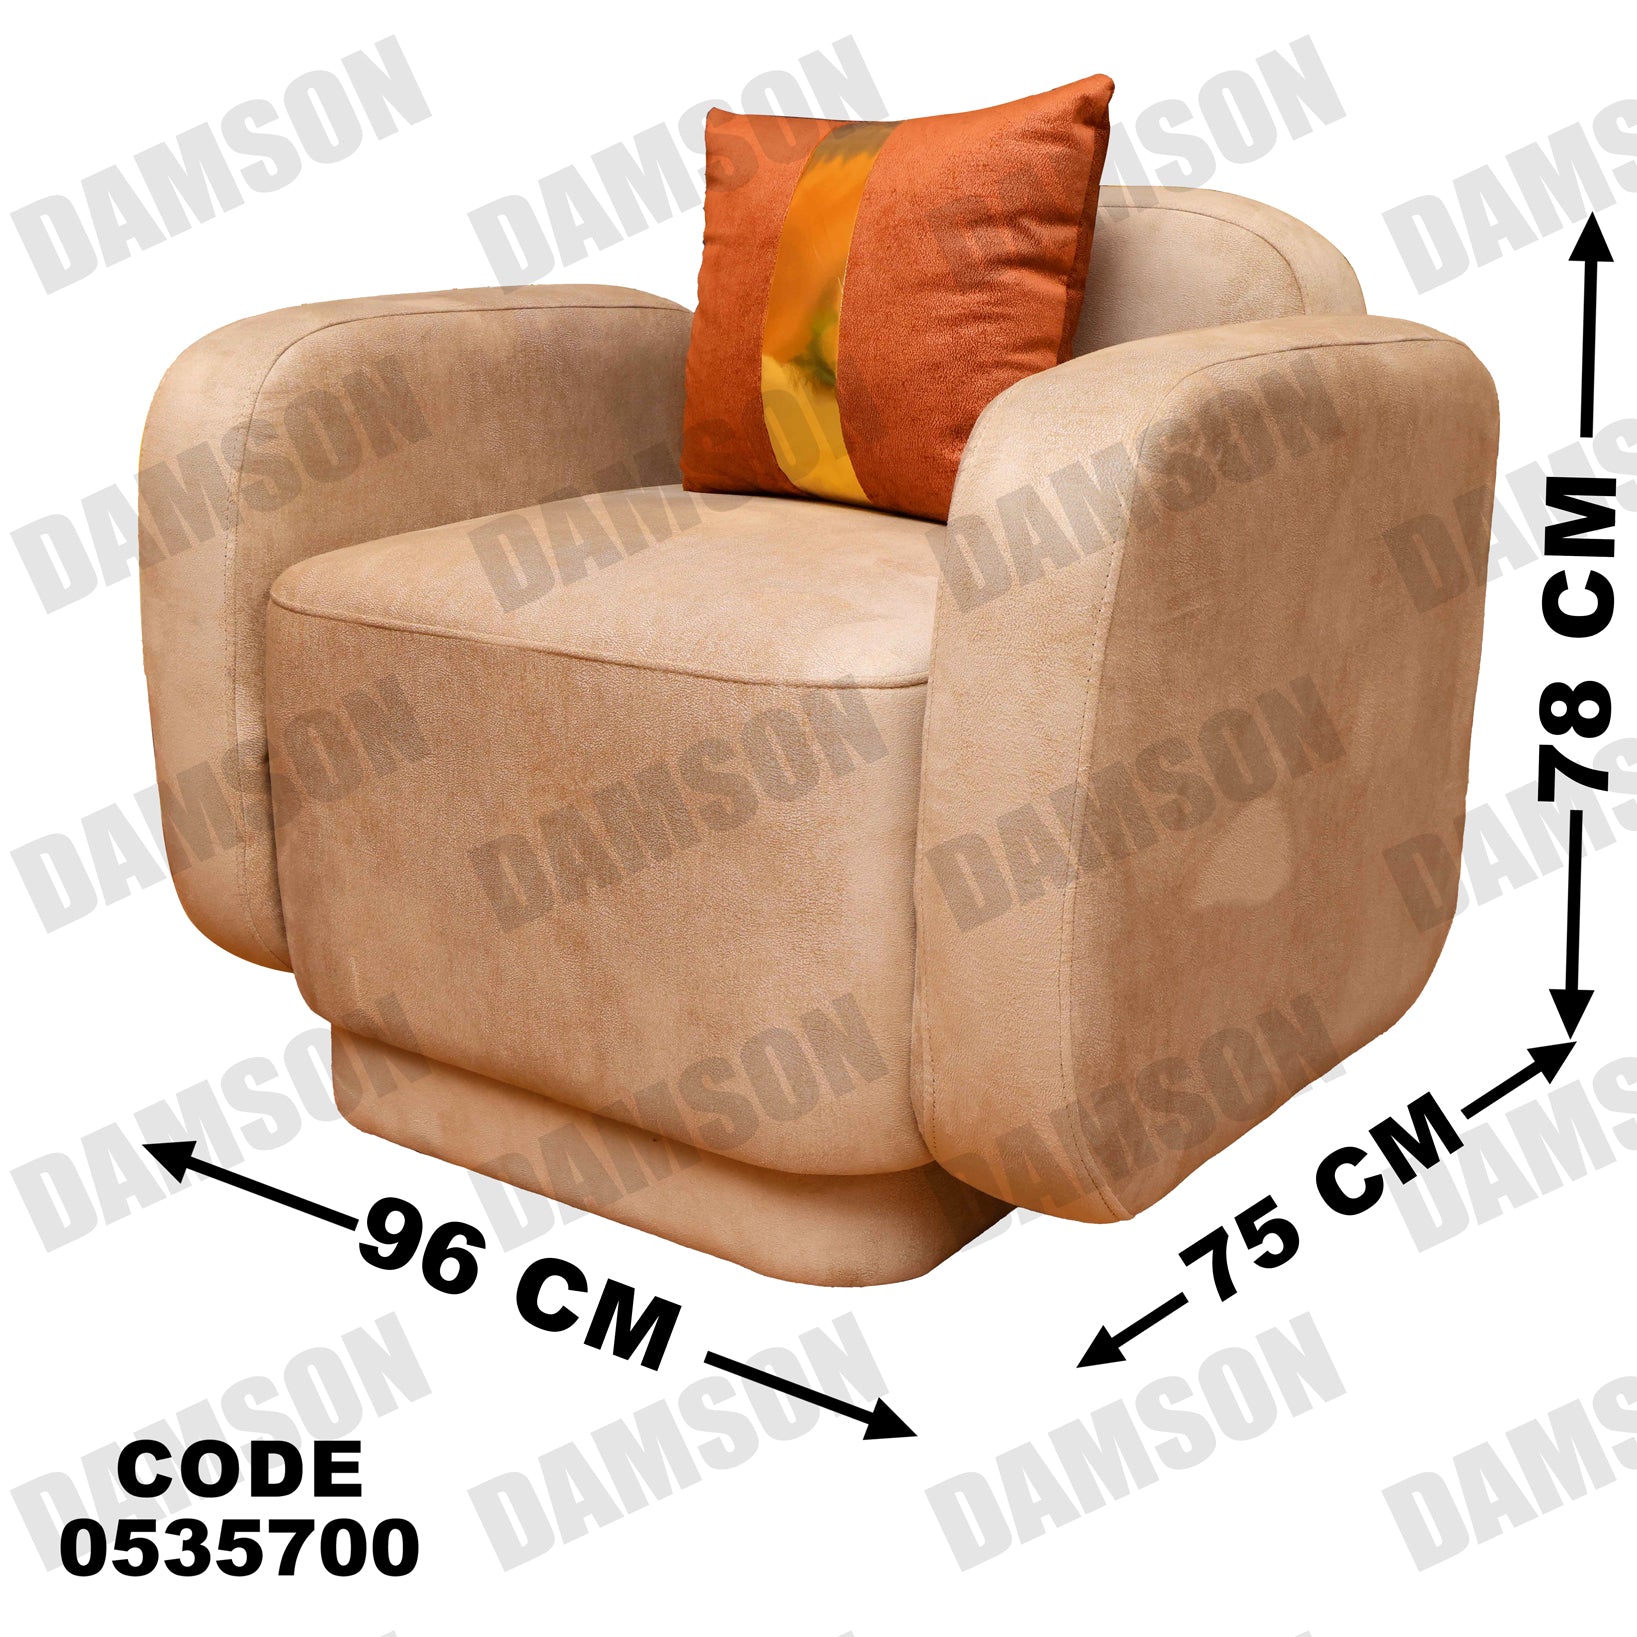 انترية 357 - Damson Furnitureانترية 357